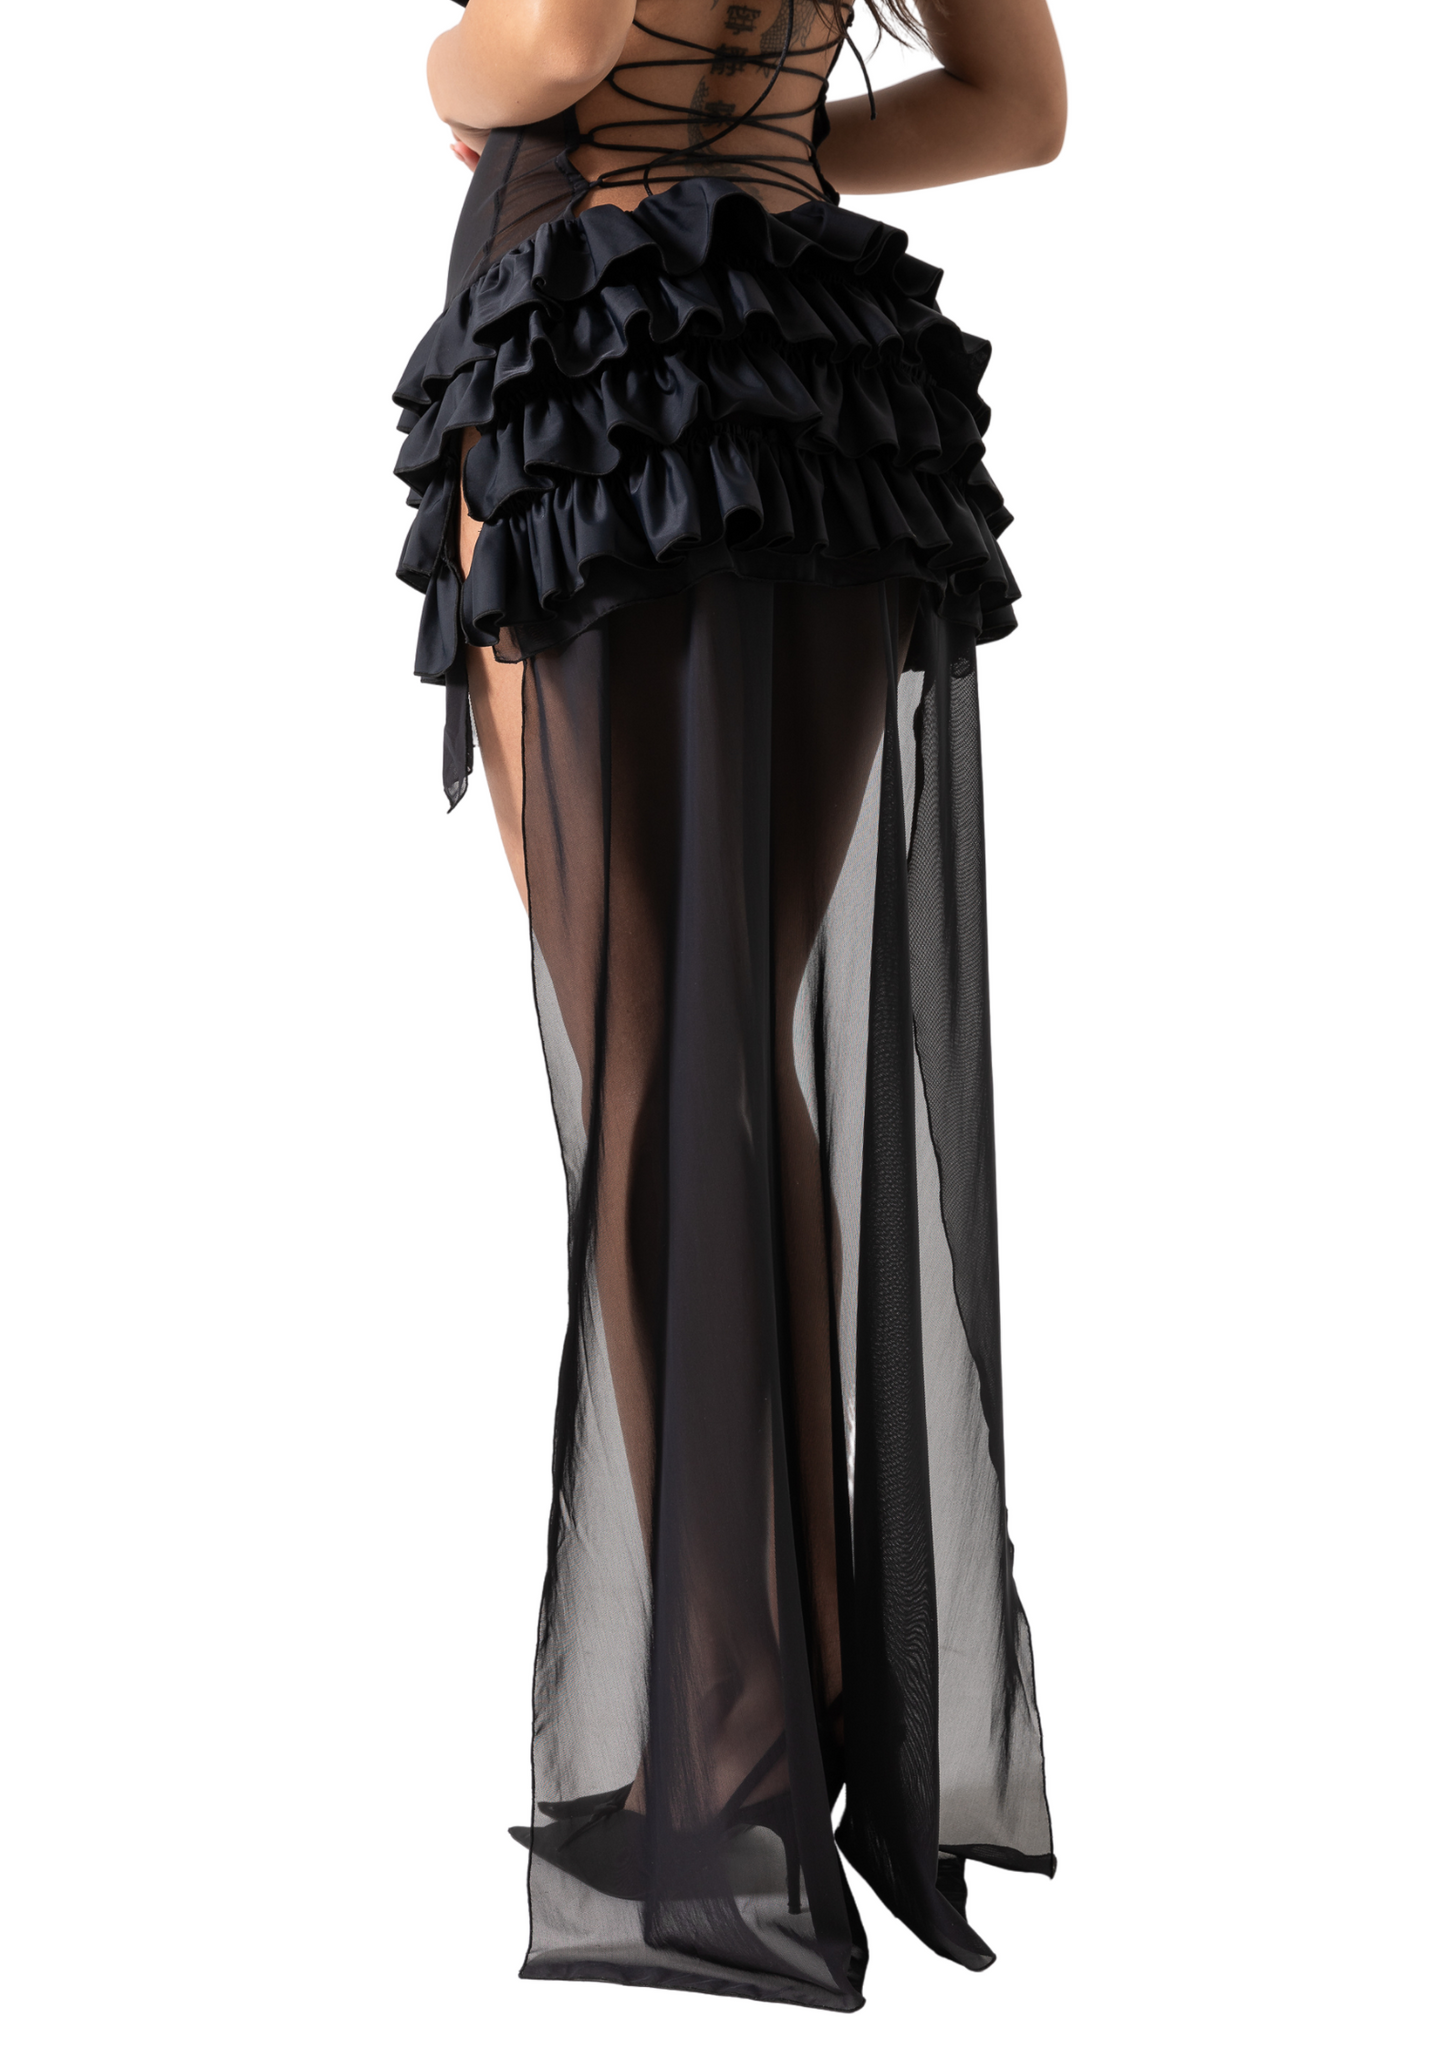 NATALYA DRESS - BLACK